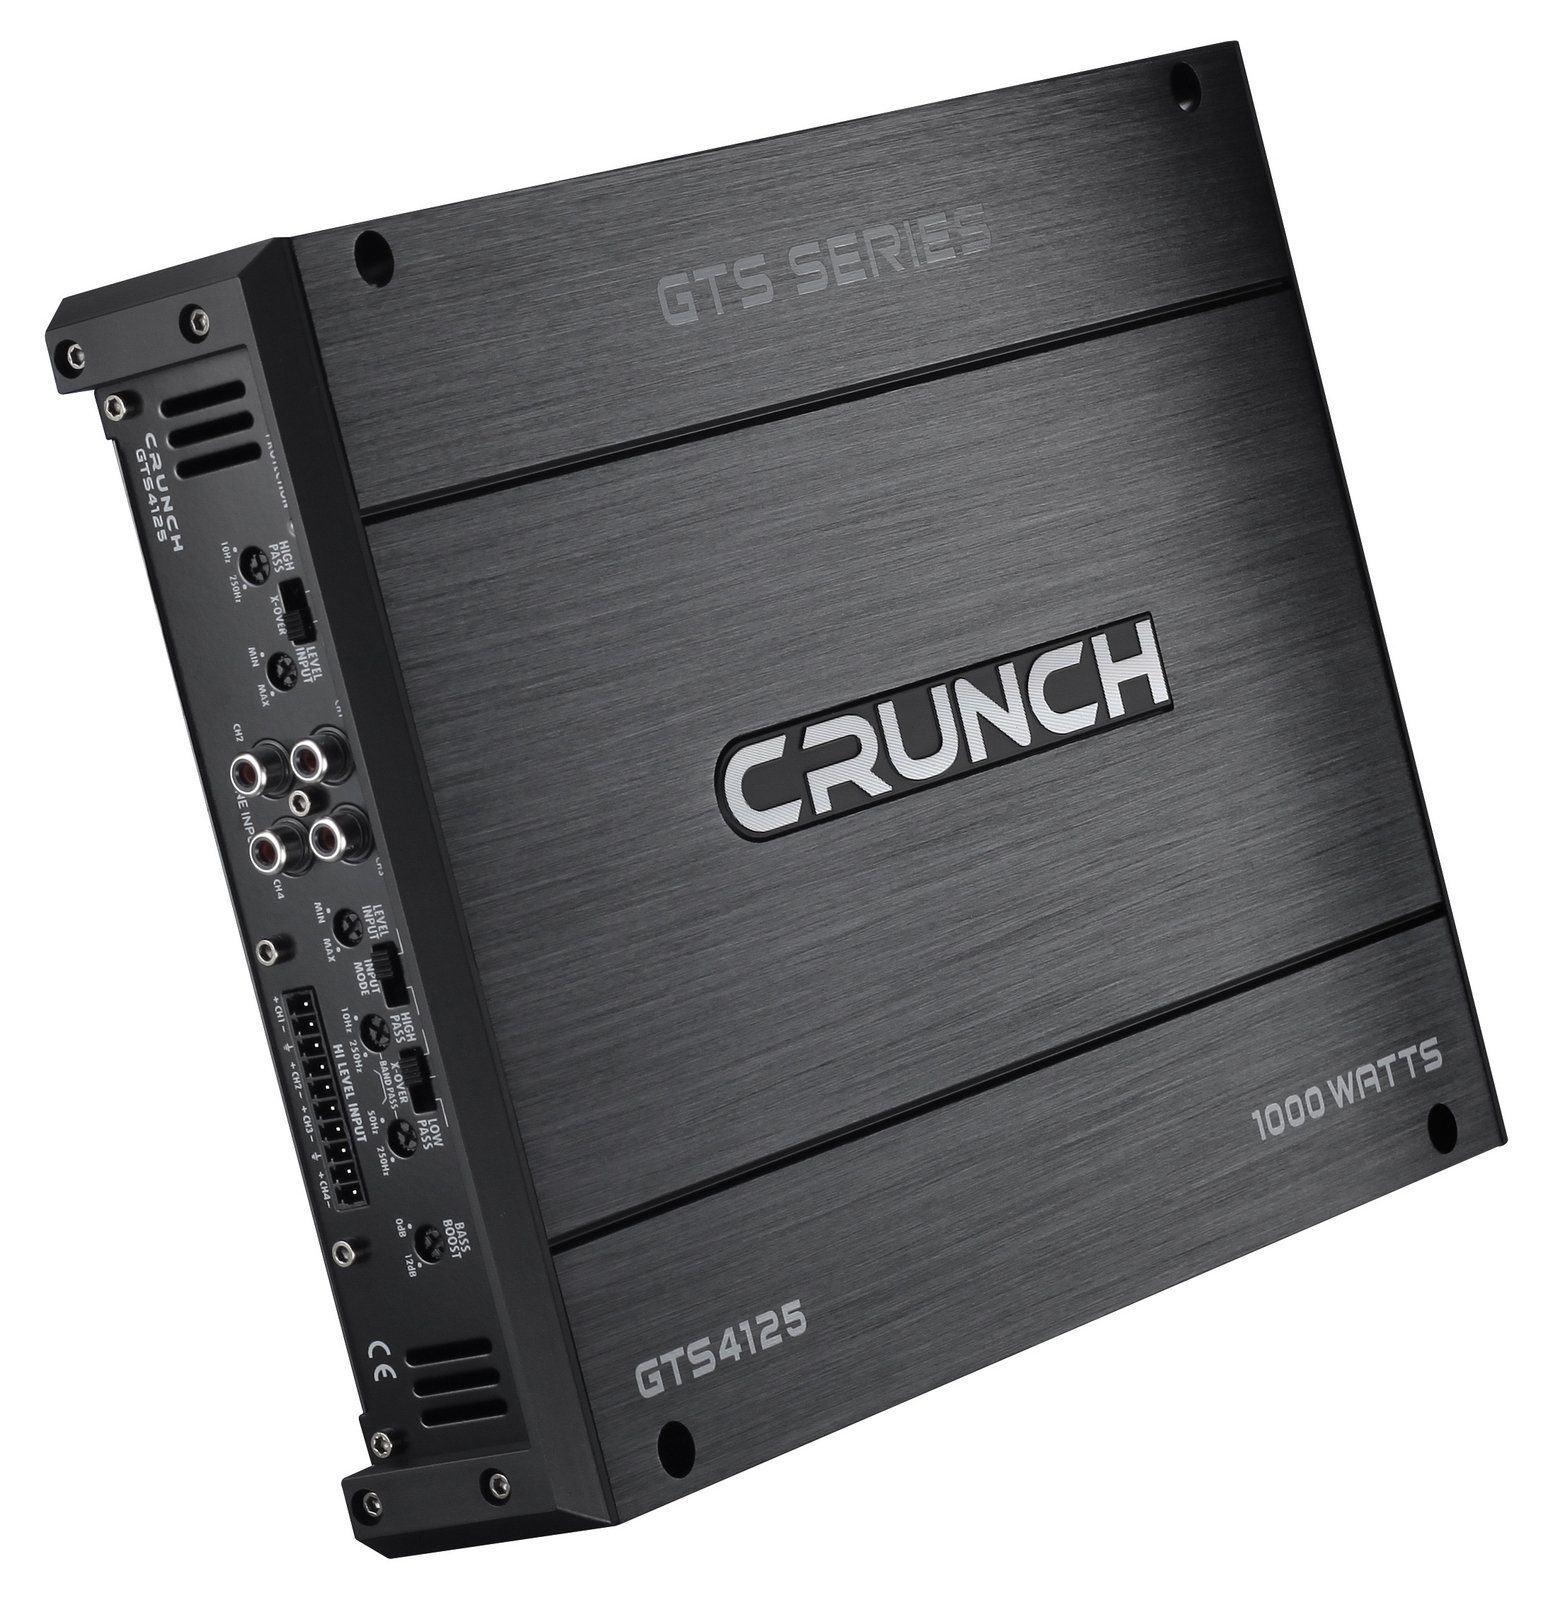 Crunch »GTS4125 Class A/B Analog 4-Kanal Endstufe 1000 Watt Auto«  Verstärker online kaufen | OTTO